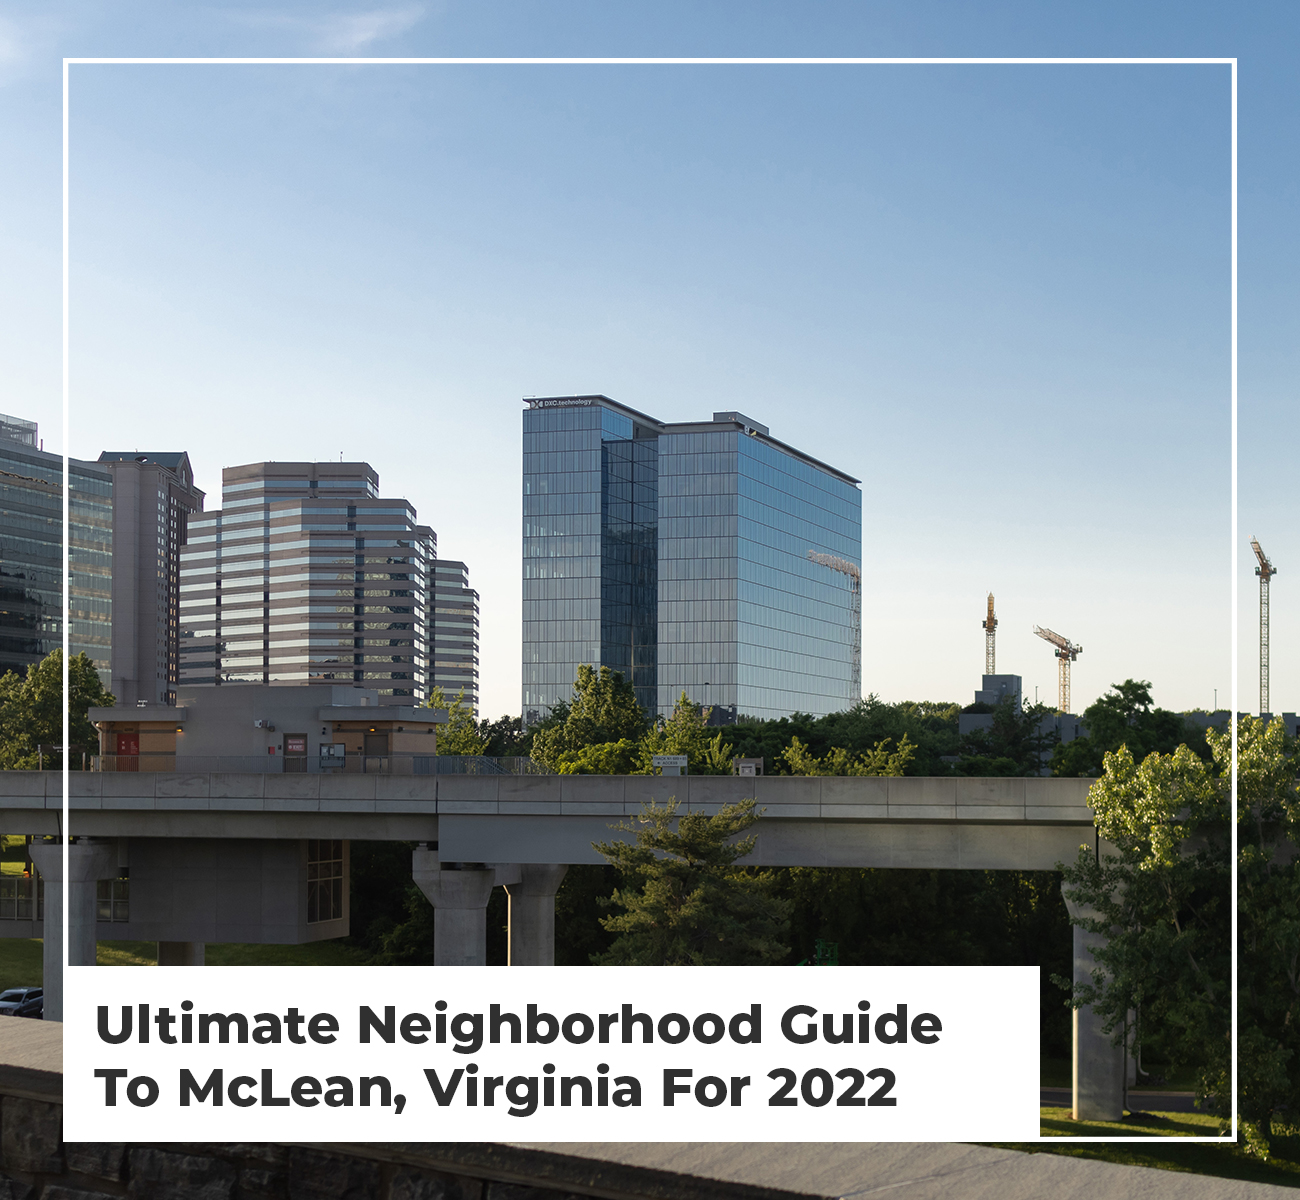 Ultimate Neighborhood Guide To McLean, Virginia - Main Image